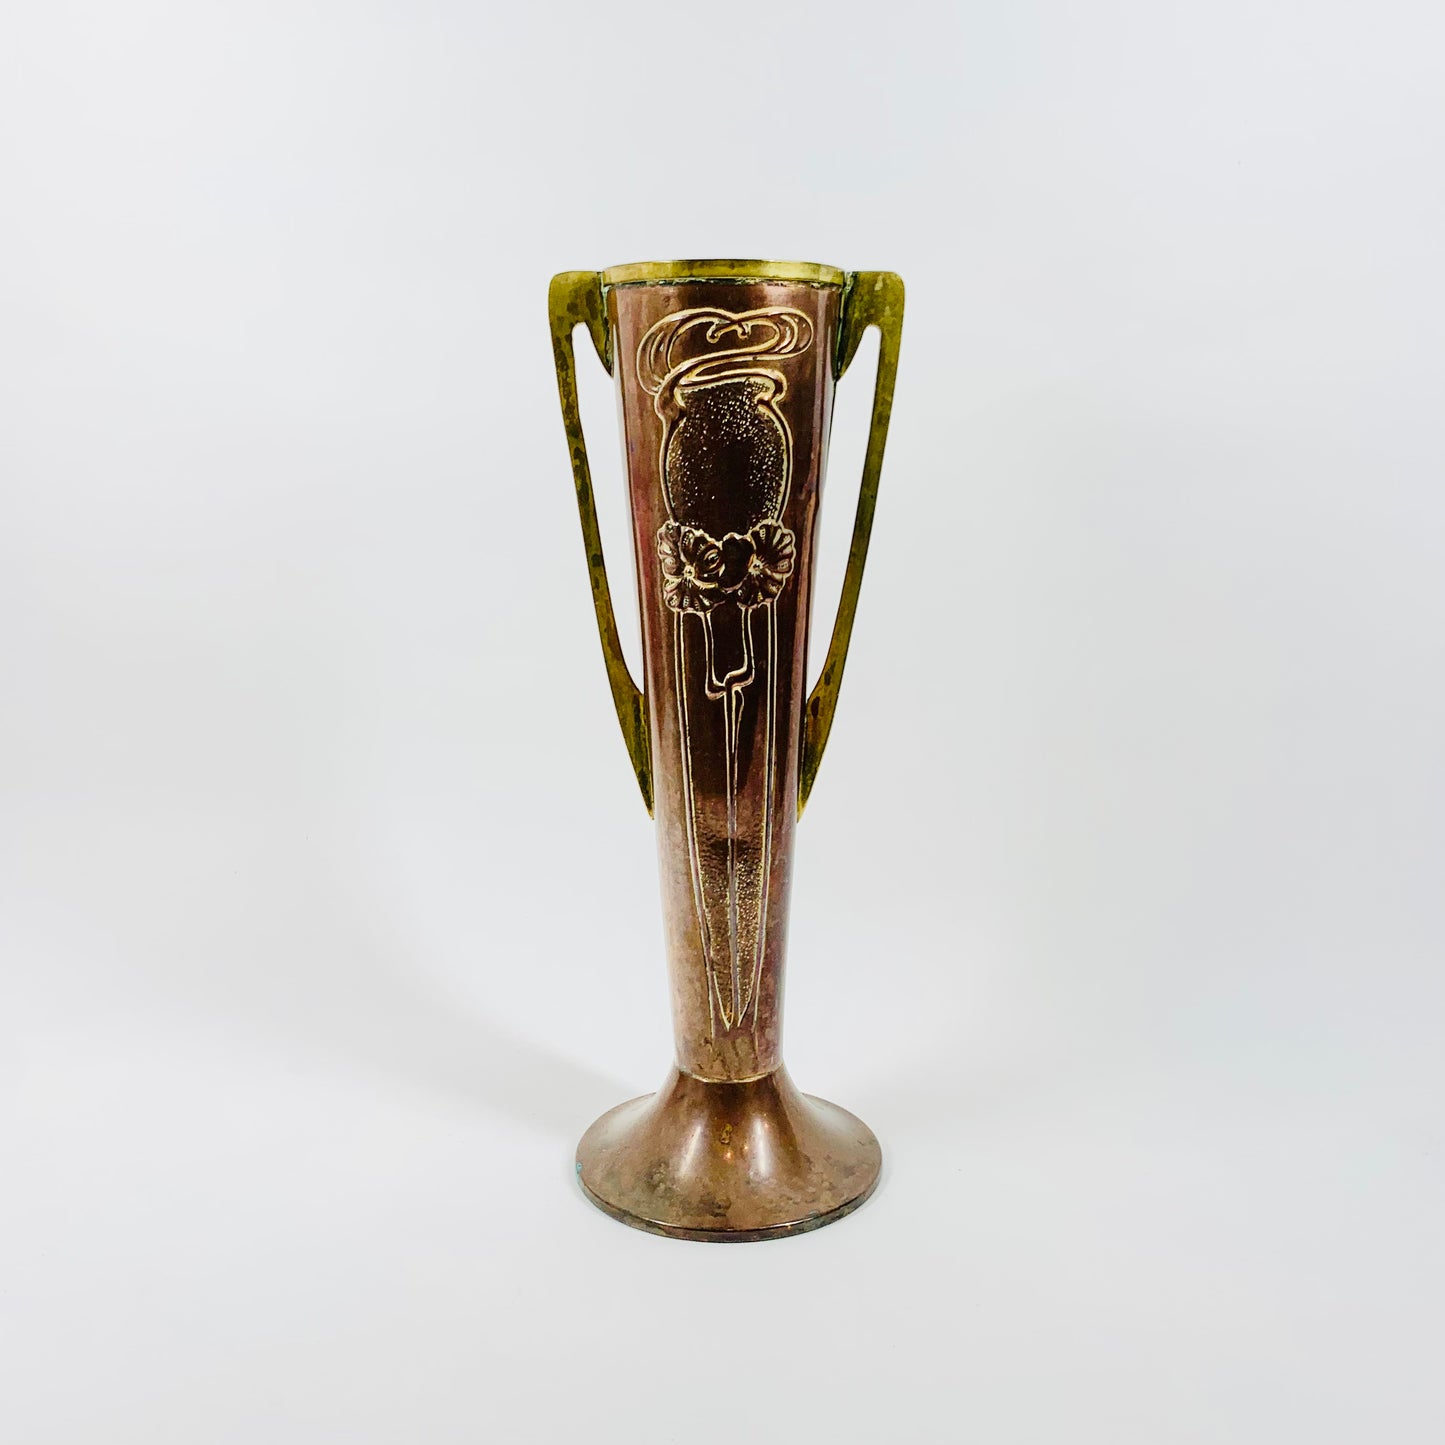 Antique Art Nouveau Beldray vase with floral motif